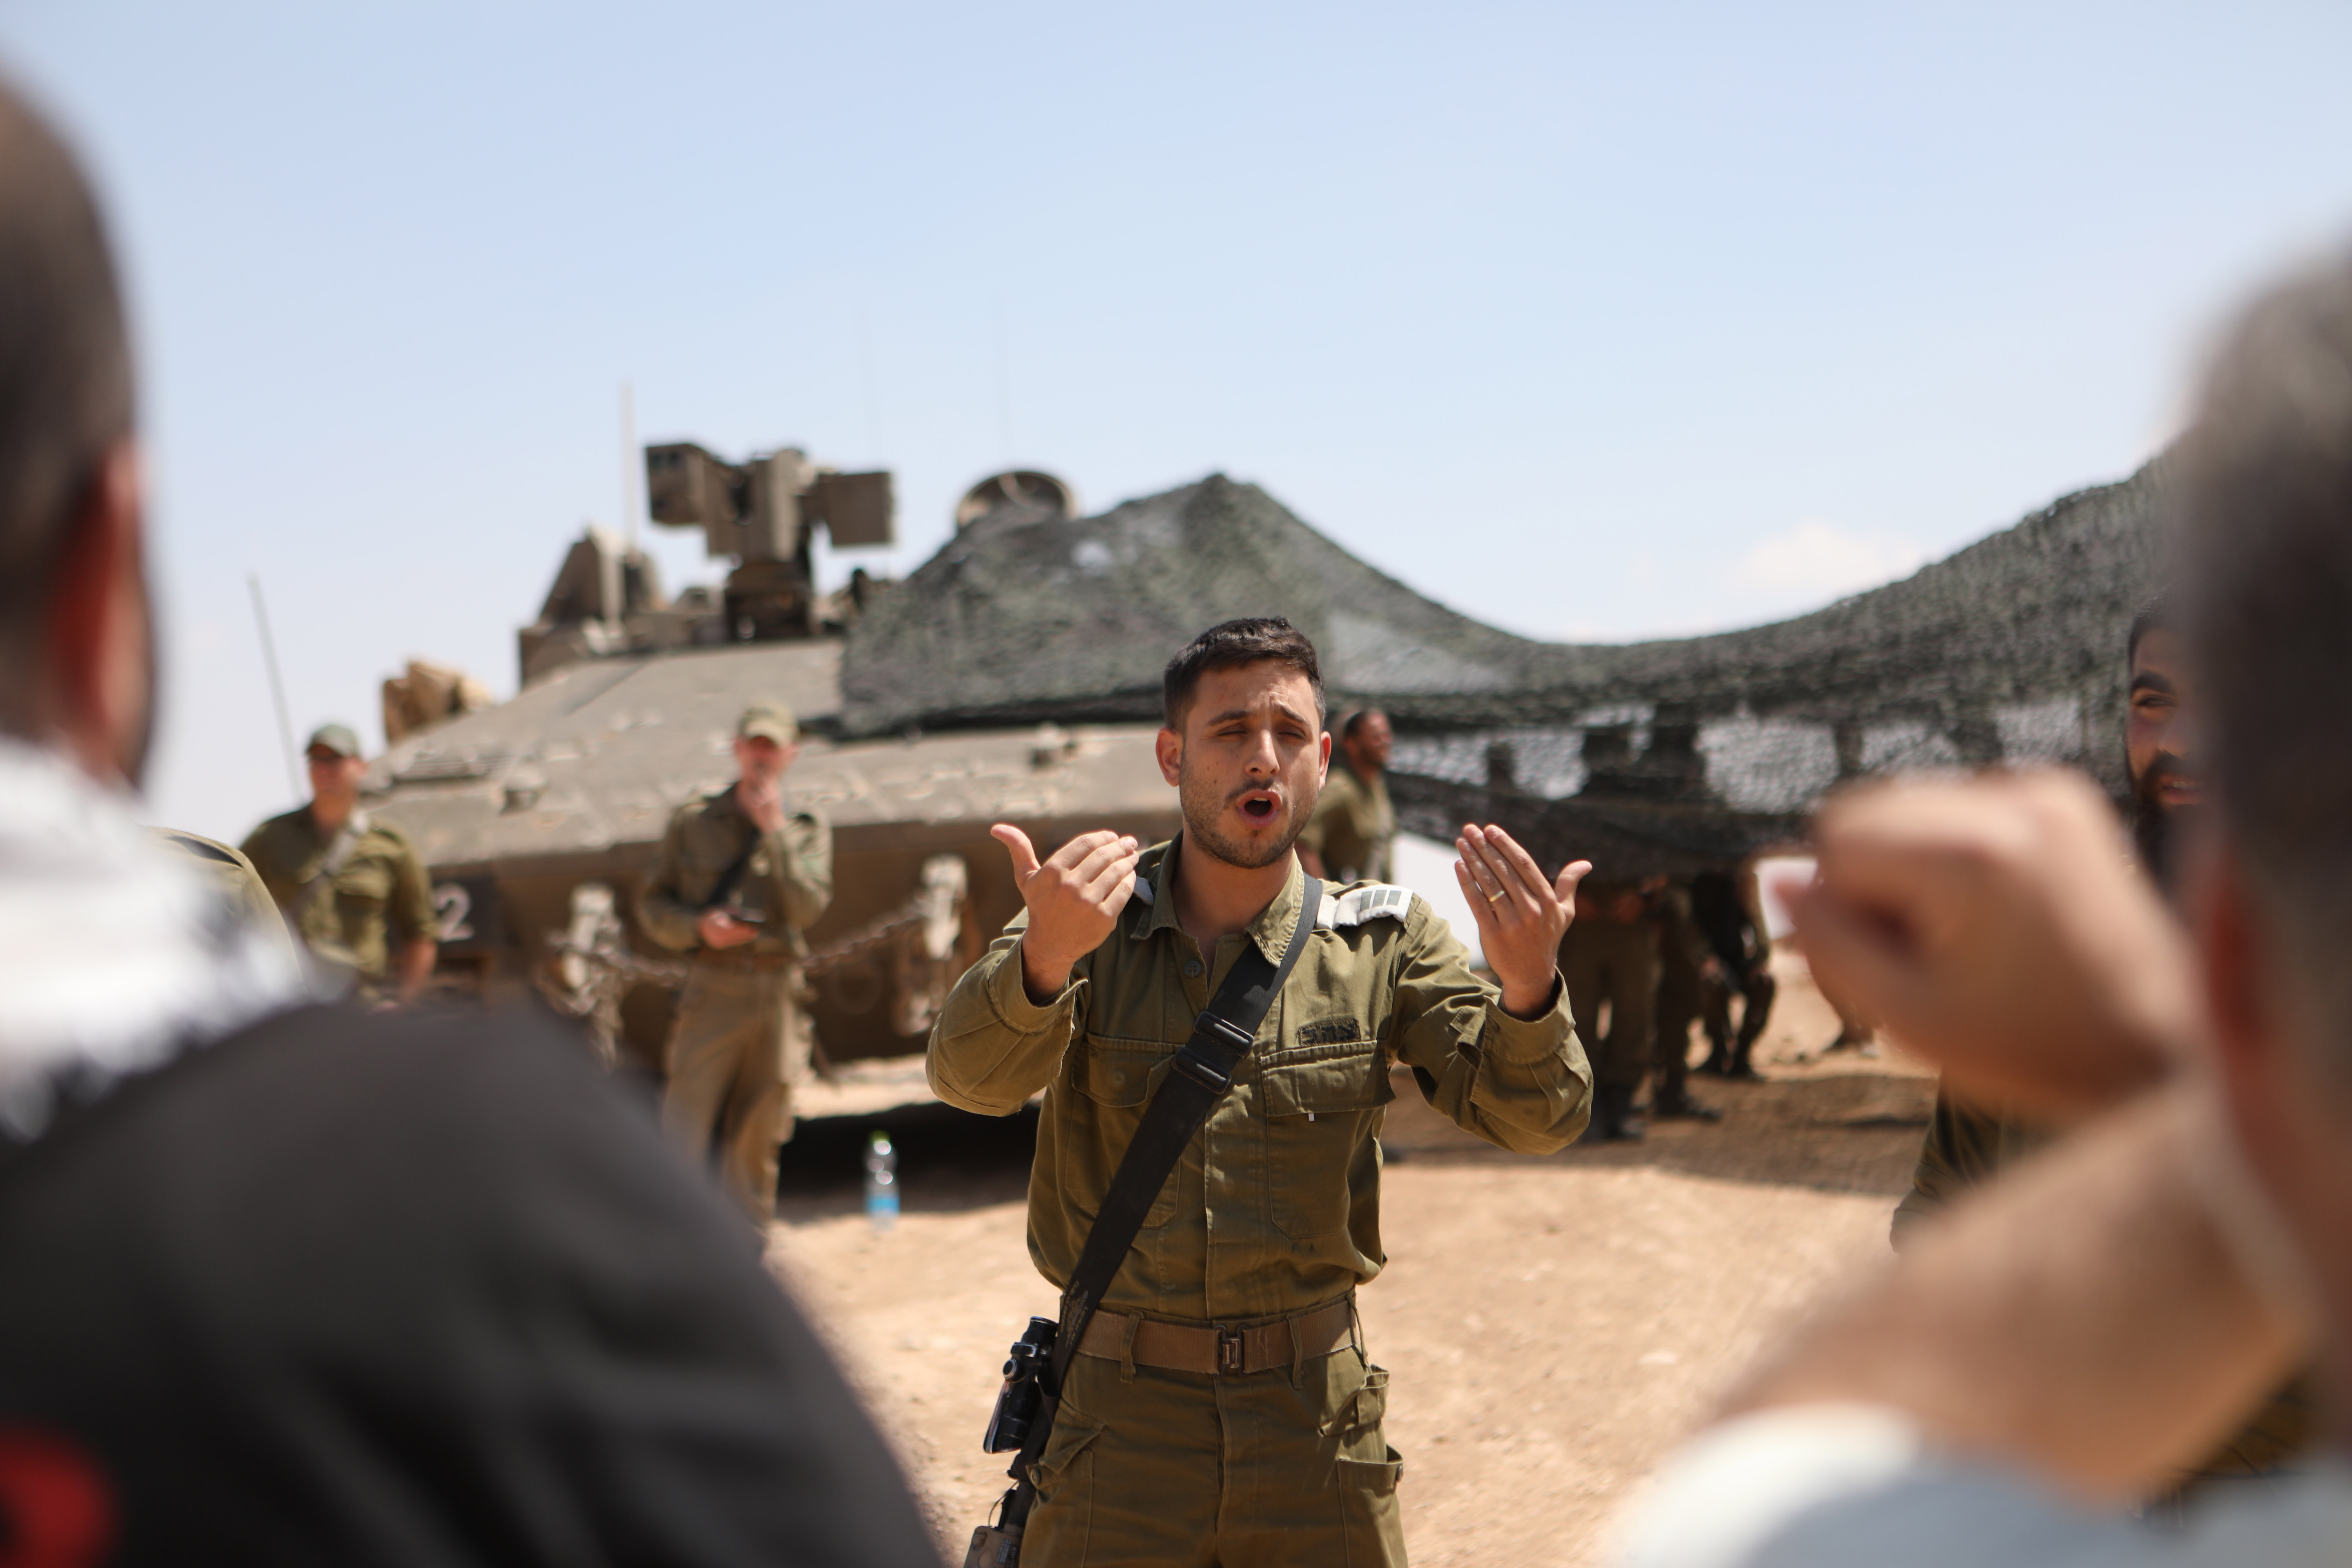 خلال تدريبات عسكرية إسرائيلية في مسافر يطا قبل أسبوعين (gettyimages)